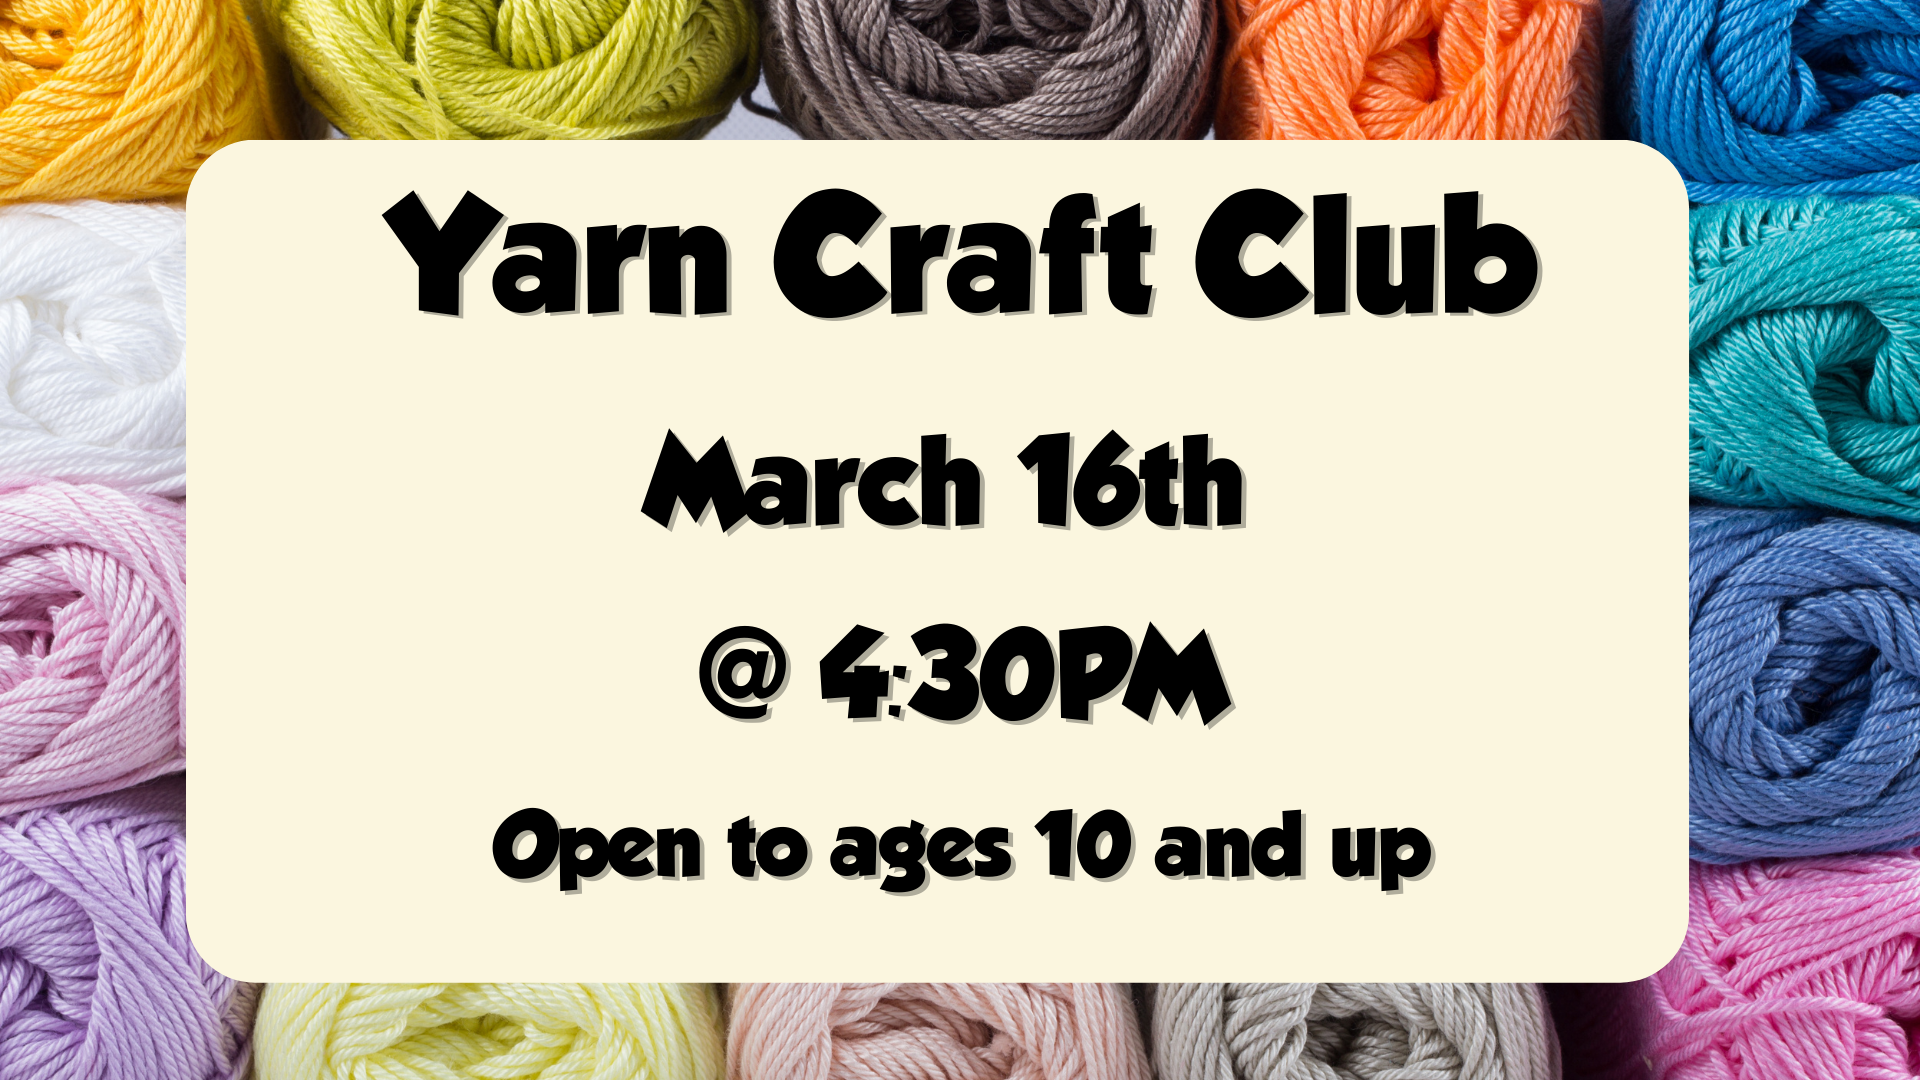 Yarn Craft Club, March 16th at 4:30pm